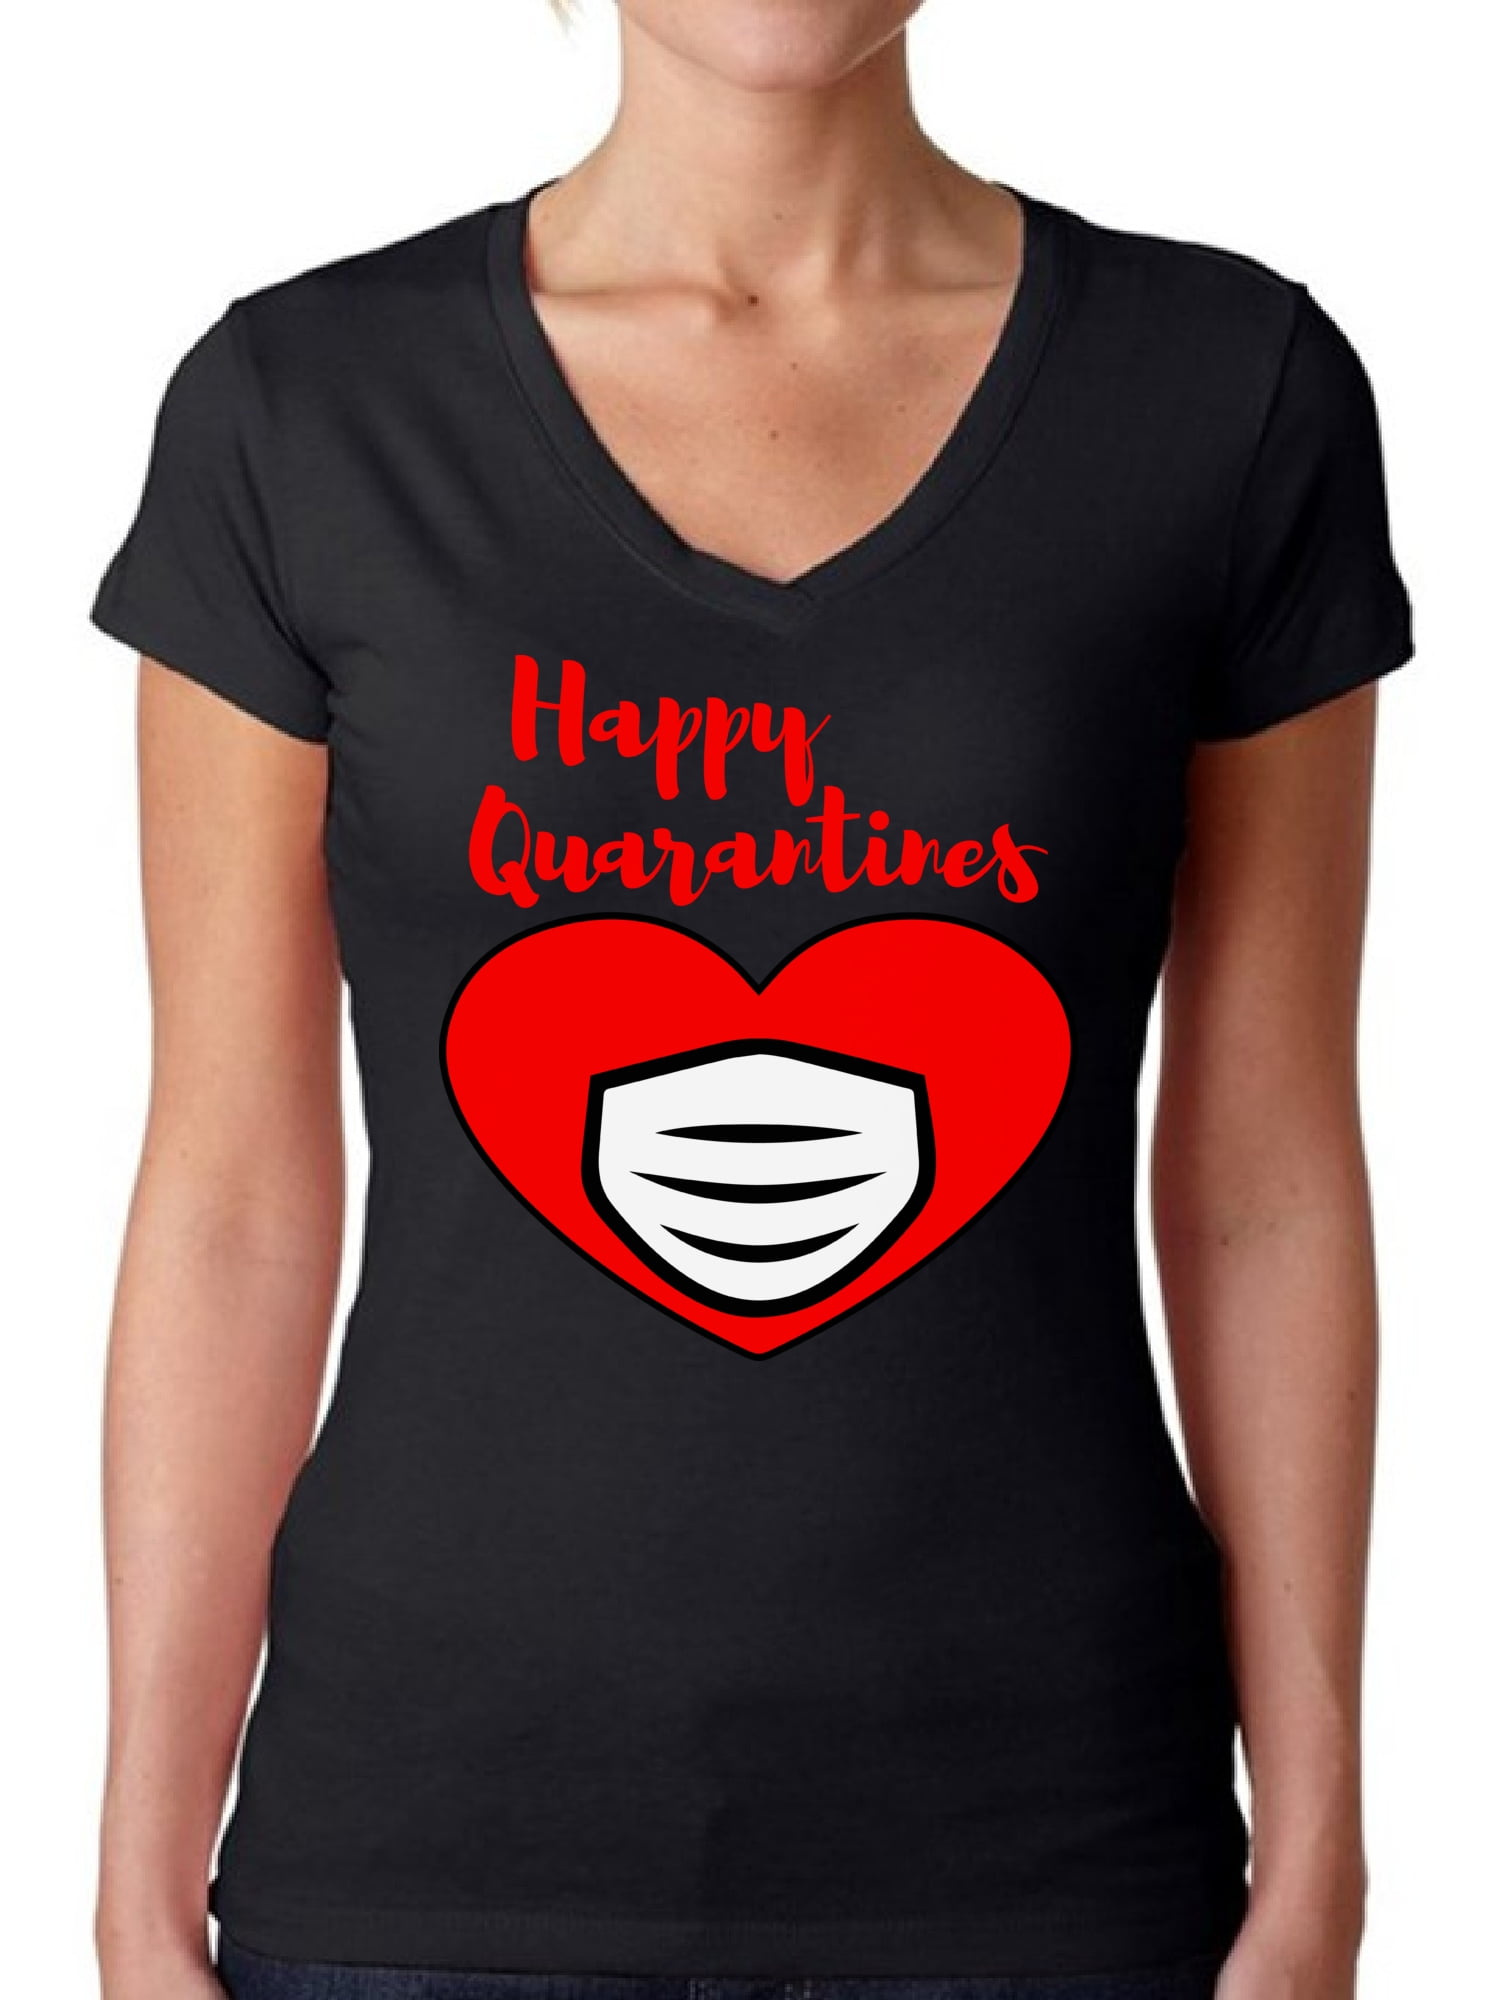 Red Tie Top Women's Valentine's Day Tshirt Top Tri-Blend Vneck Tshirt Valentine Graphic Tee Valentine Shirt